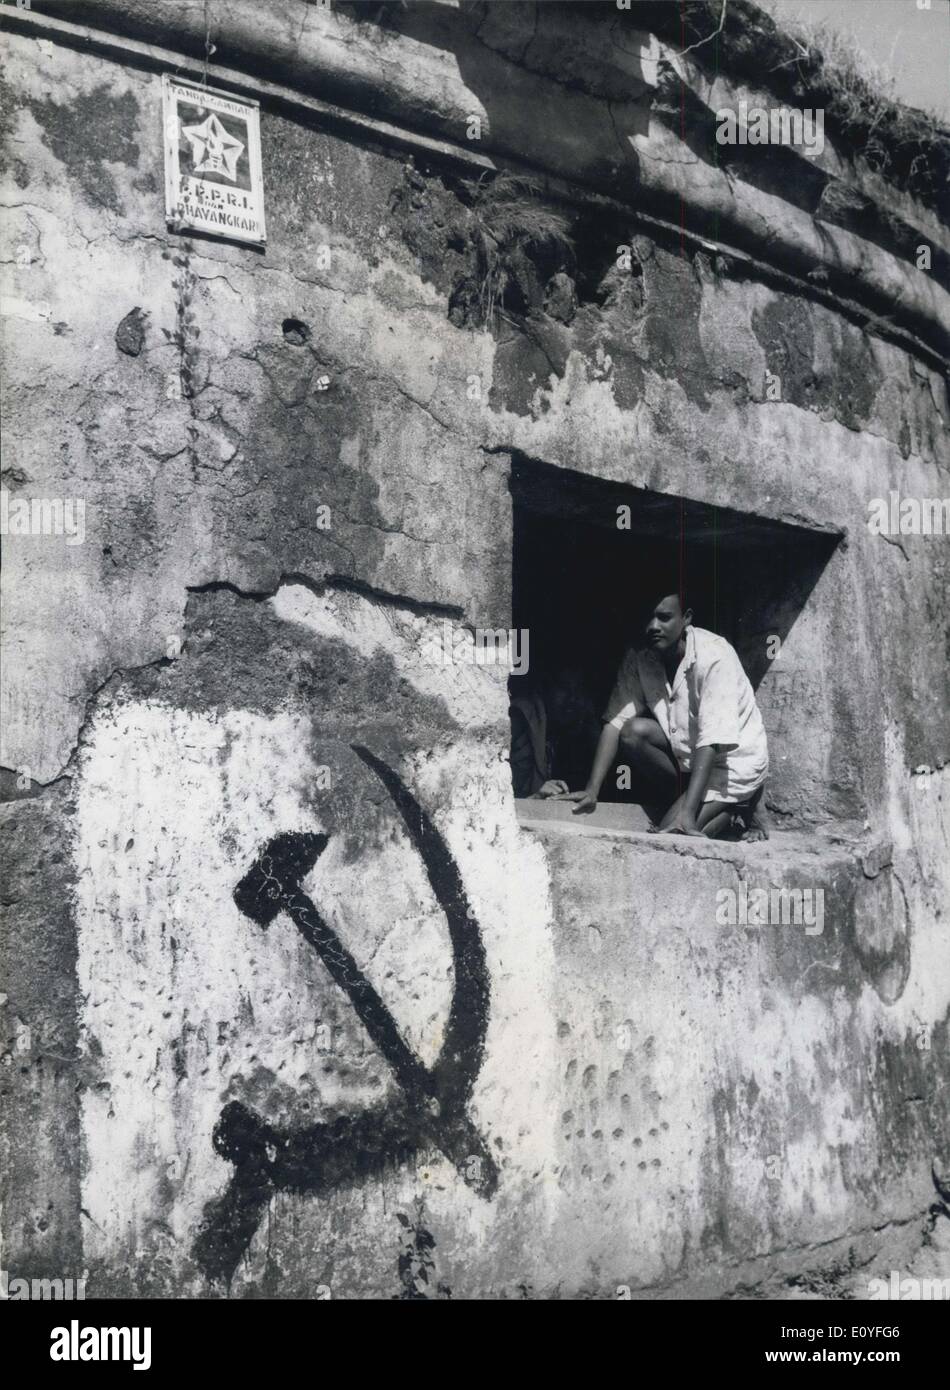 1 janvier, 1970 - un marteau et la faucille de décorer les murs d'un ancien palais dans le centre de Java. L'IPC, le Parti communiste indonésien, a obtenu 6 000 000 voix aux dernières élections, mais si une autre élection a lieu ils s'attendre à doubler ce nombre. mais il n'y a pas eu d'élection pour de nombreuses années. Banque D'Images